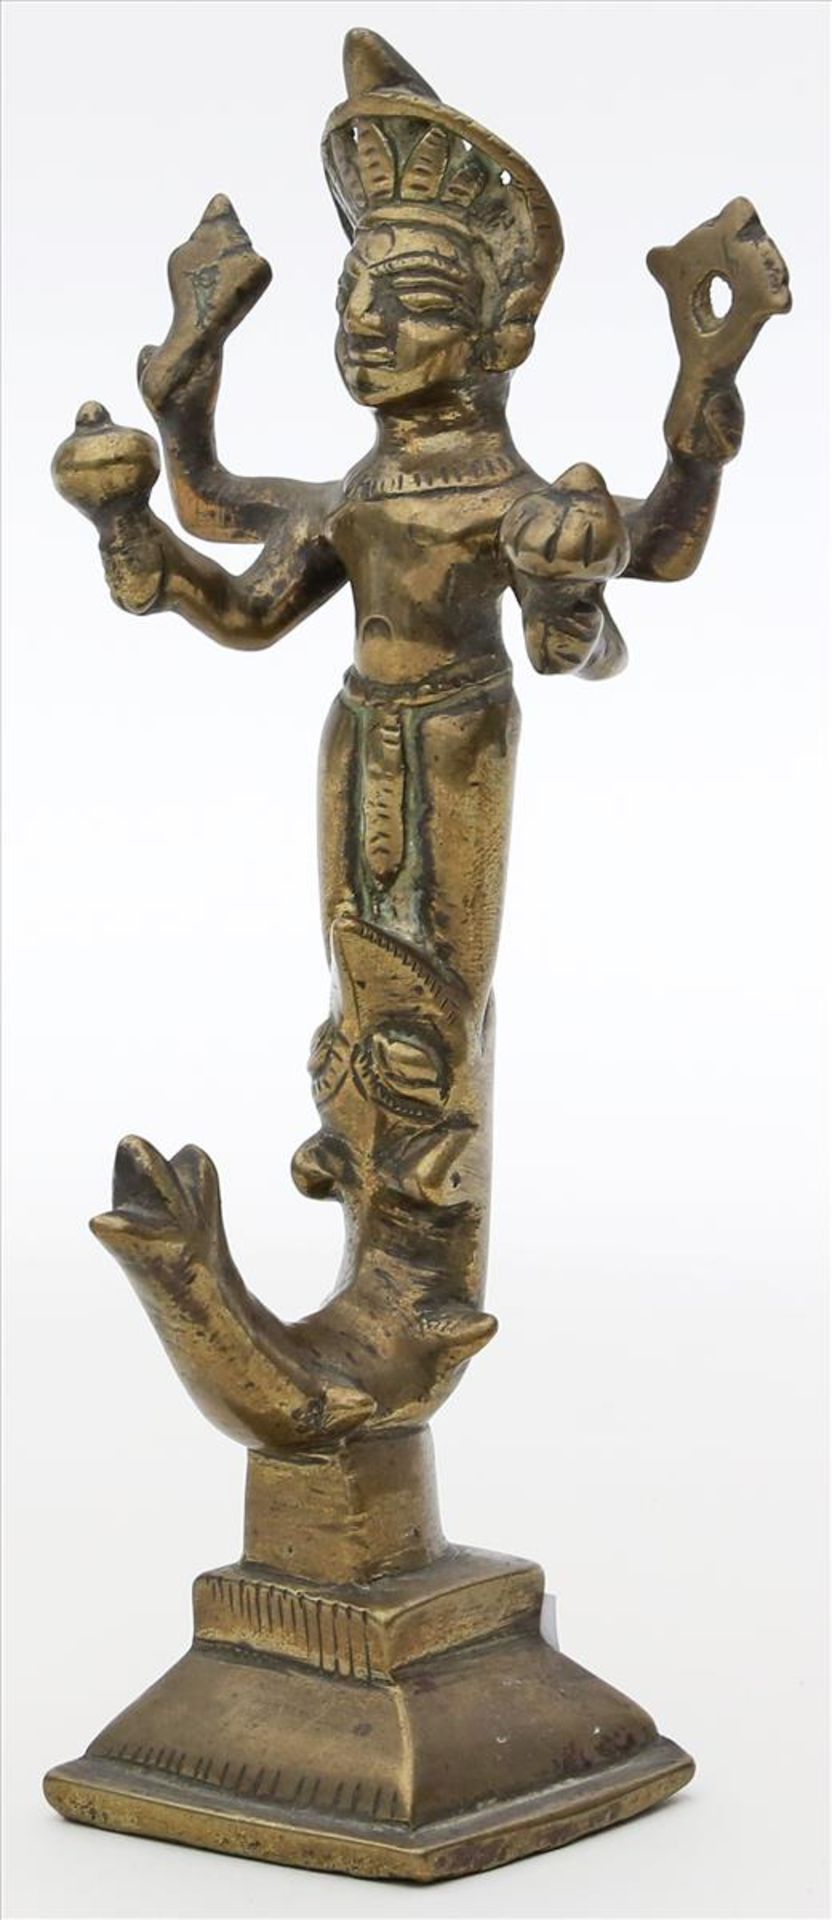 Skulptur einer Gottheit.Messing/Bronze. Wohl Indien. H. 16 cm.